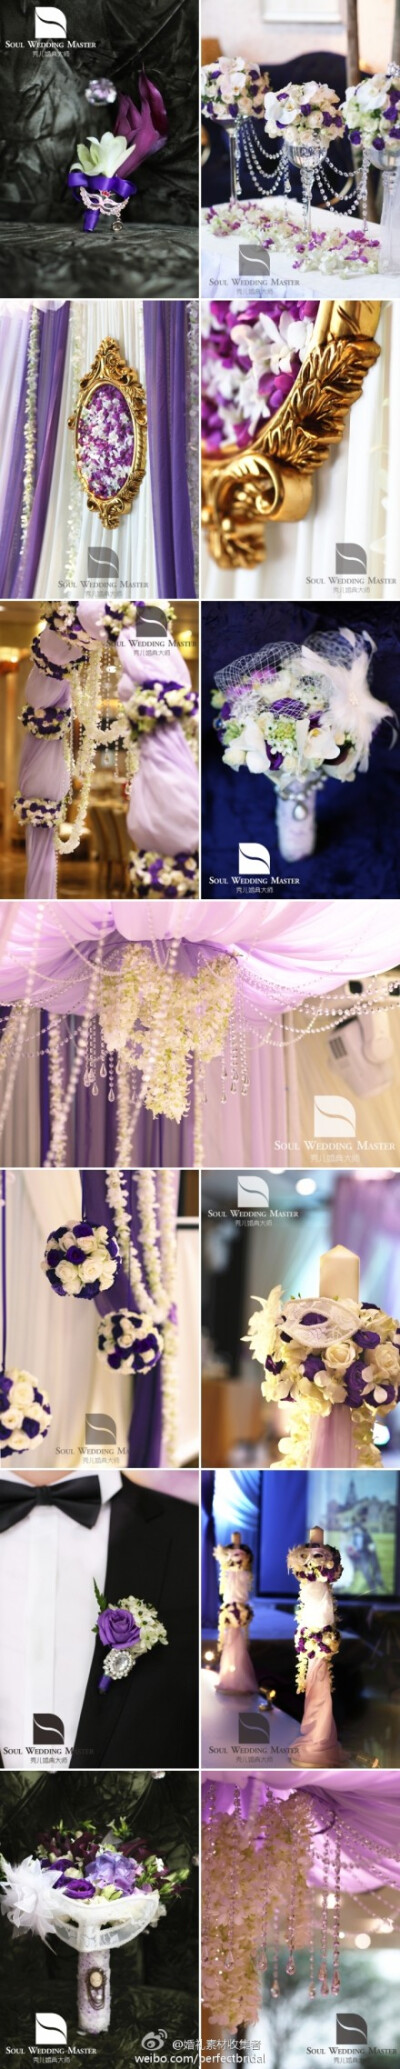 【梦幻威尼斯主题婚礼】这场婚礼我们的设计师专门选用帝王紫（Regal Purple）飞燕草（delphinium）和风信子（hyacinth）三种层次不同的紫色，用不同的紫色演绎出威尼斯灿烂的夜。